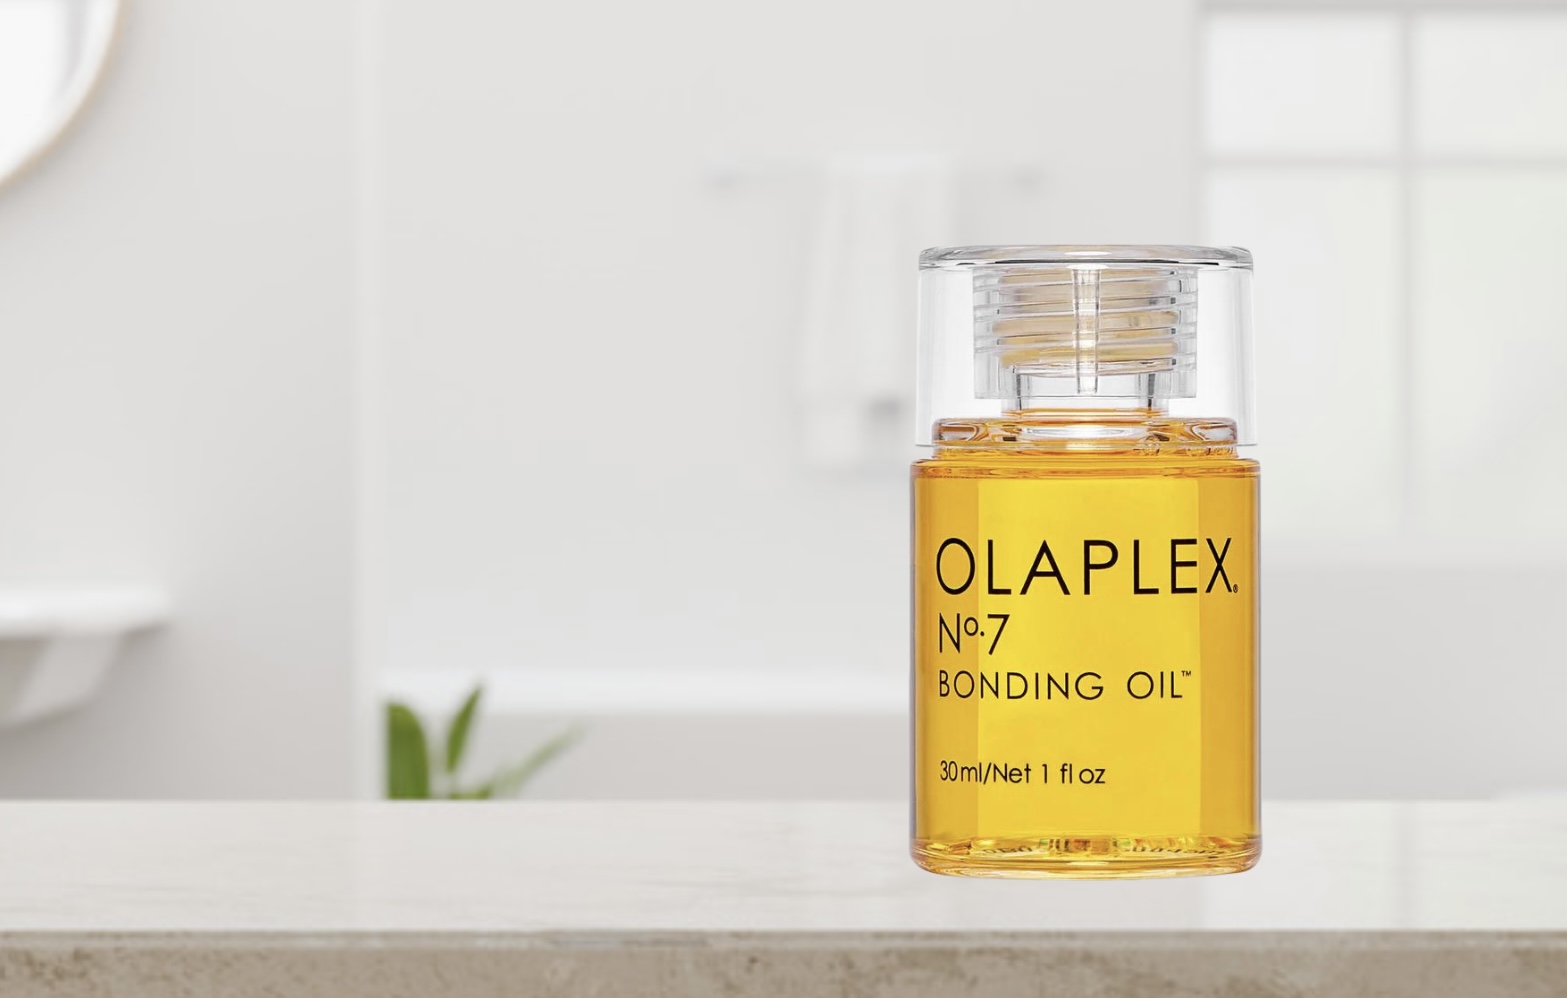 How To Use Olaplex Bonding Oil [Easy Guide + Tips]